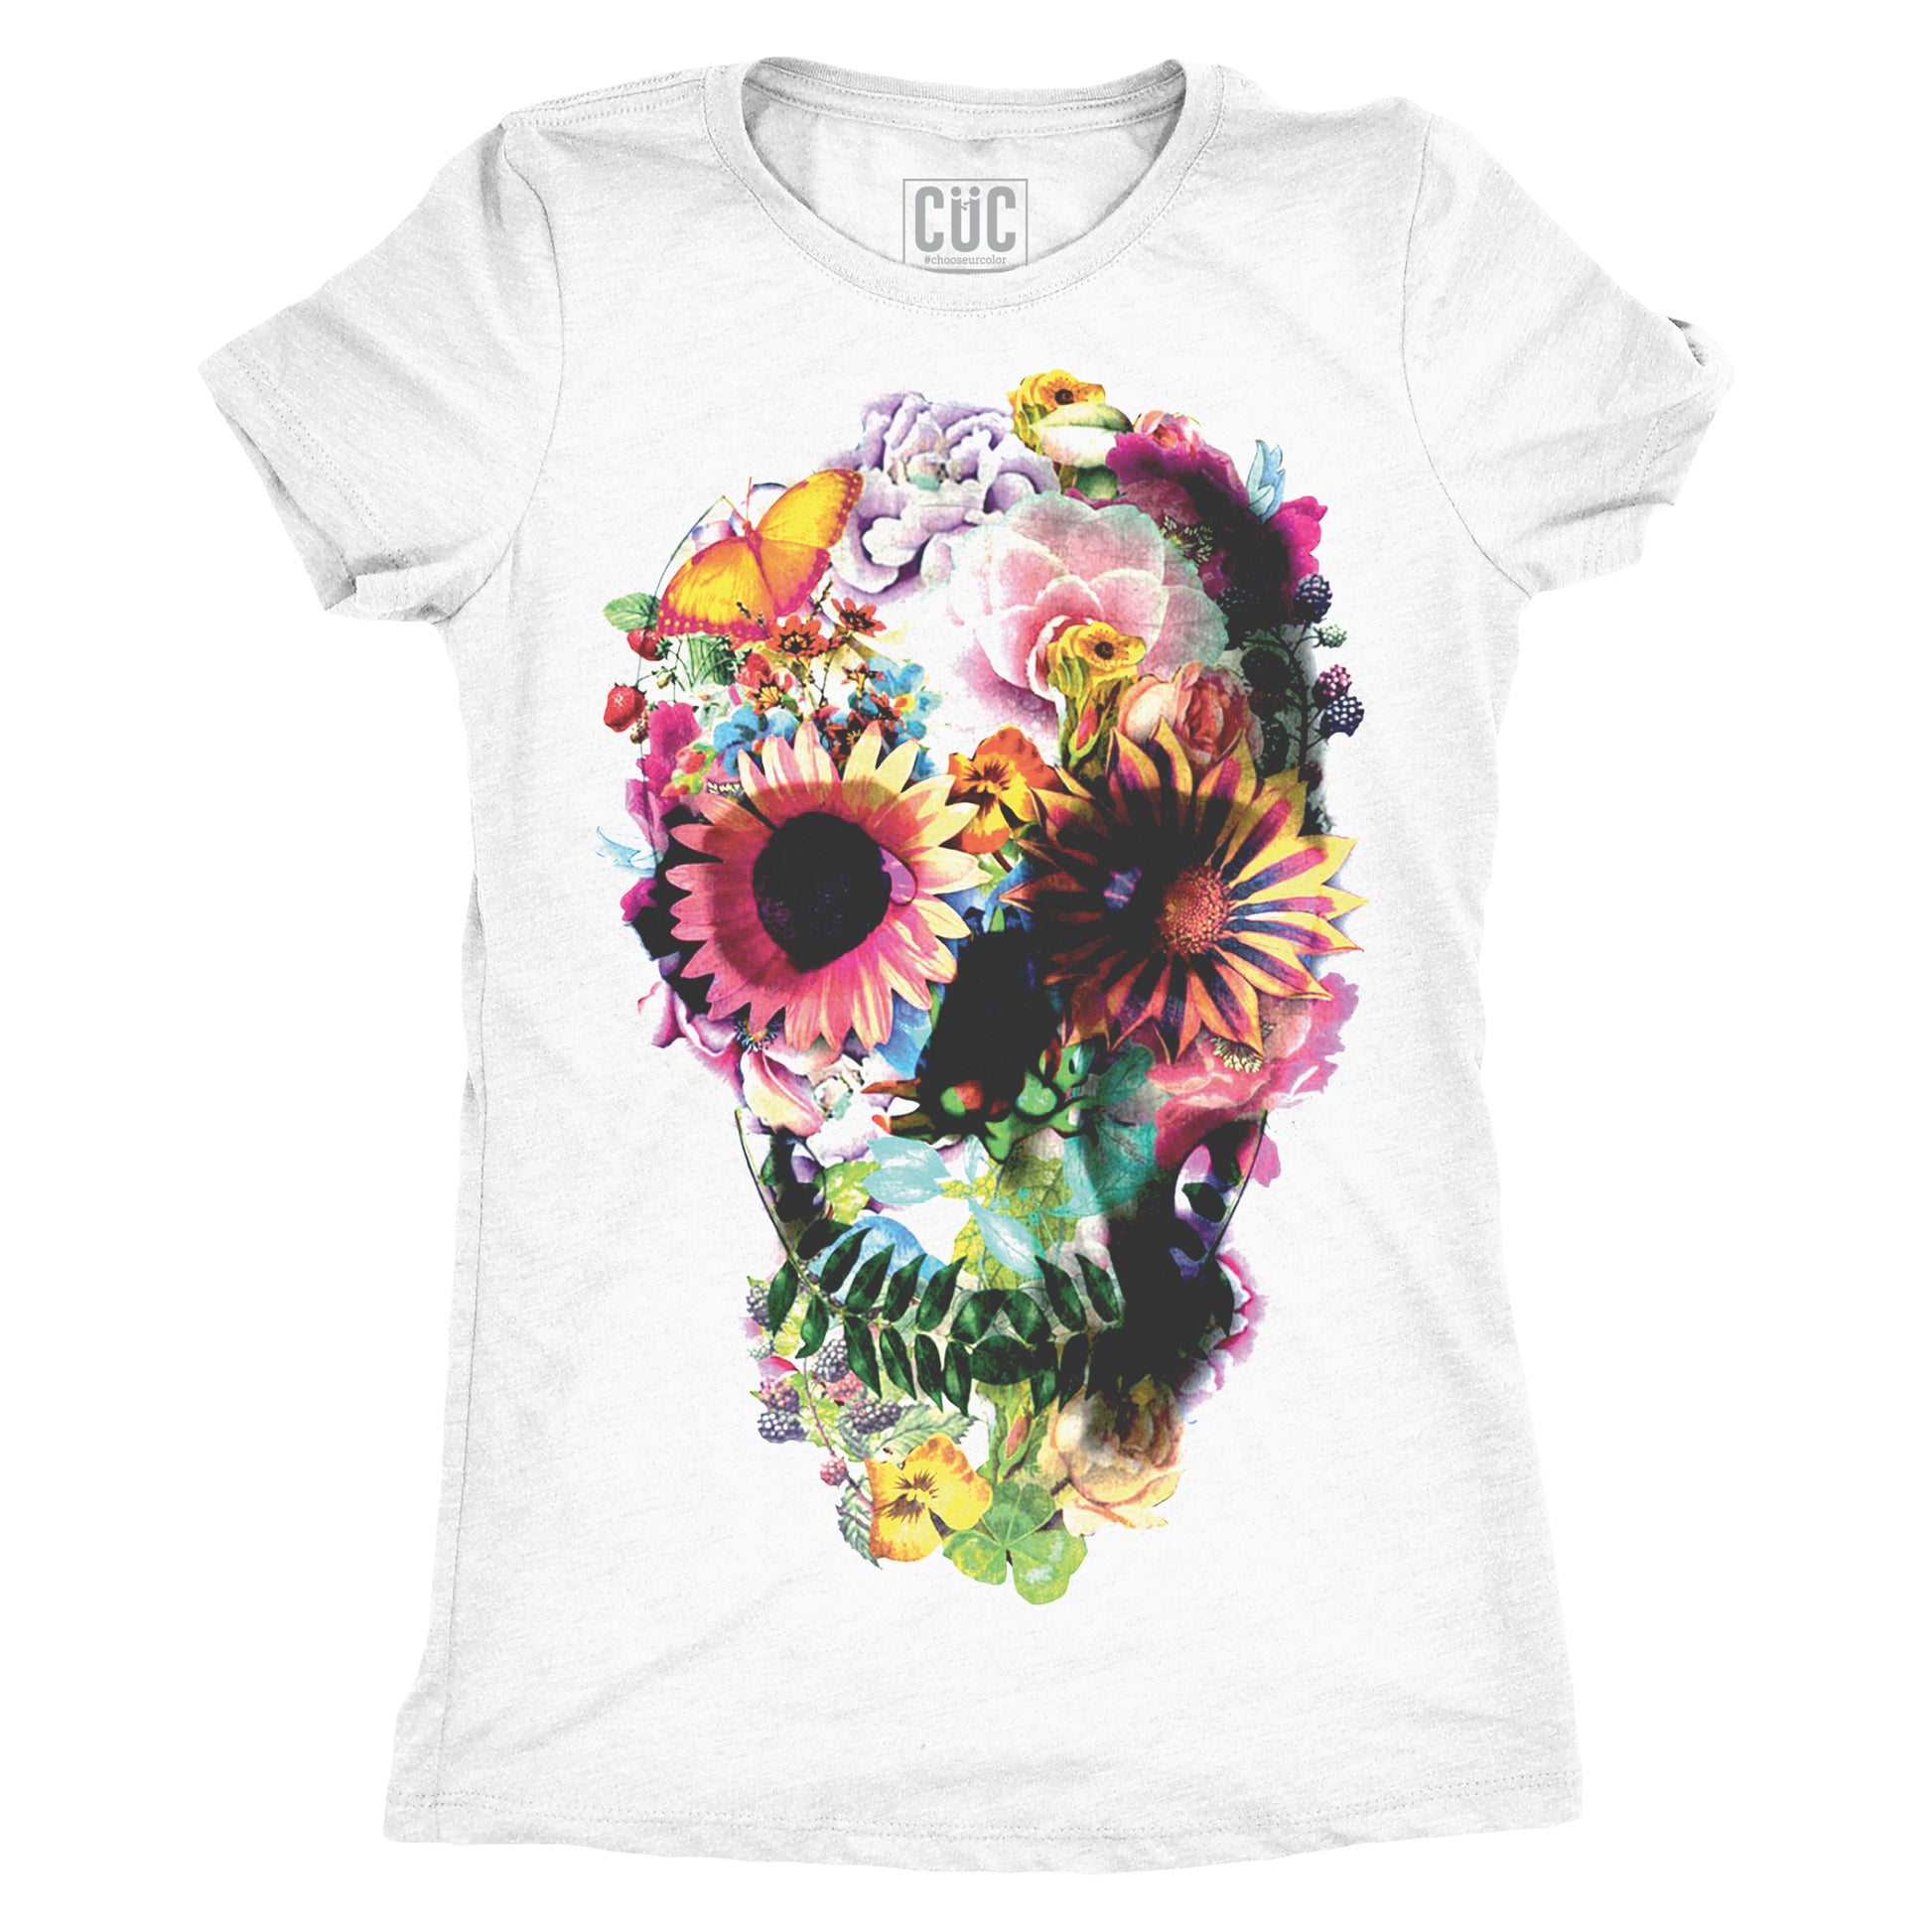 CUC T-Shirt Skull Flower - Teschio floreale - cool vintage #chooseurcolor - CUC chooseurcolor